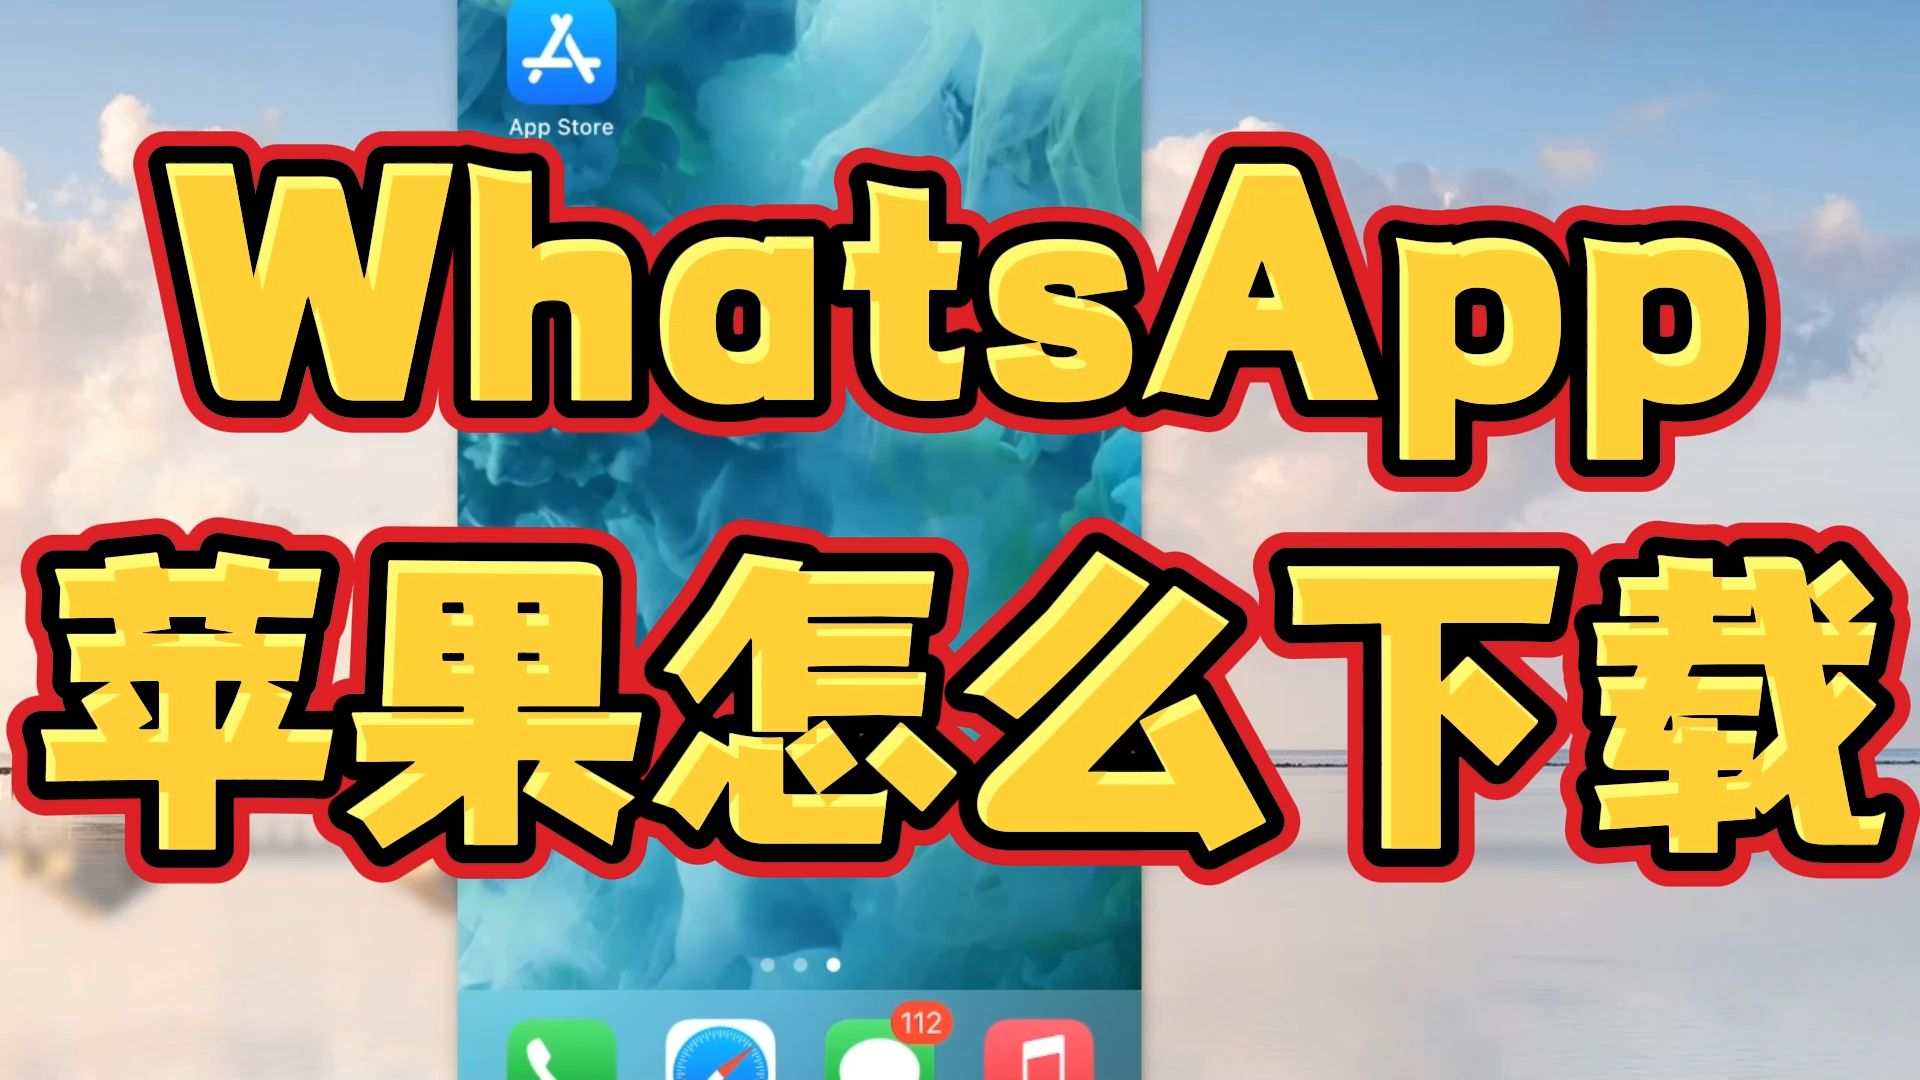 安卓版whatsapp下载网址-安卓手机轻松下载 Whats